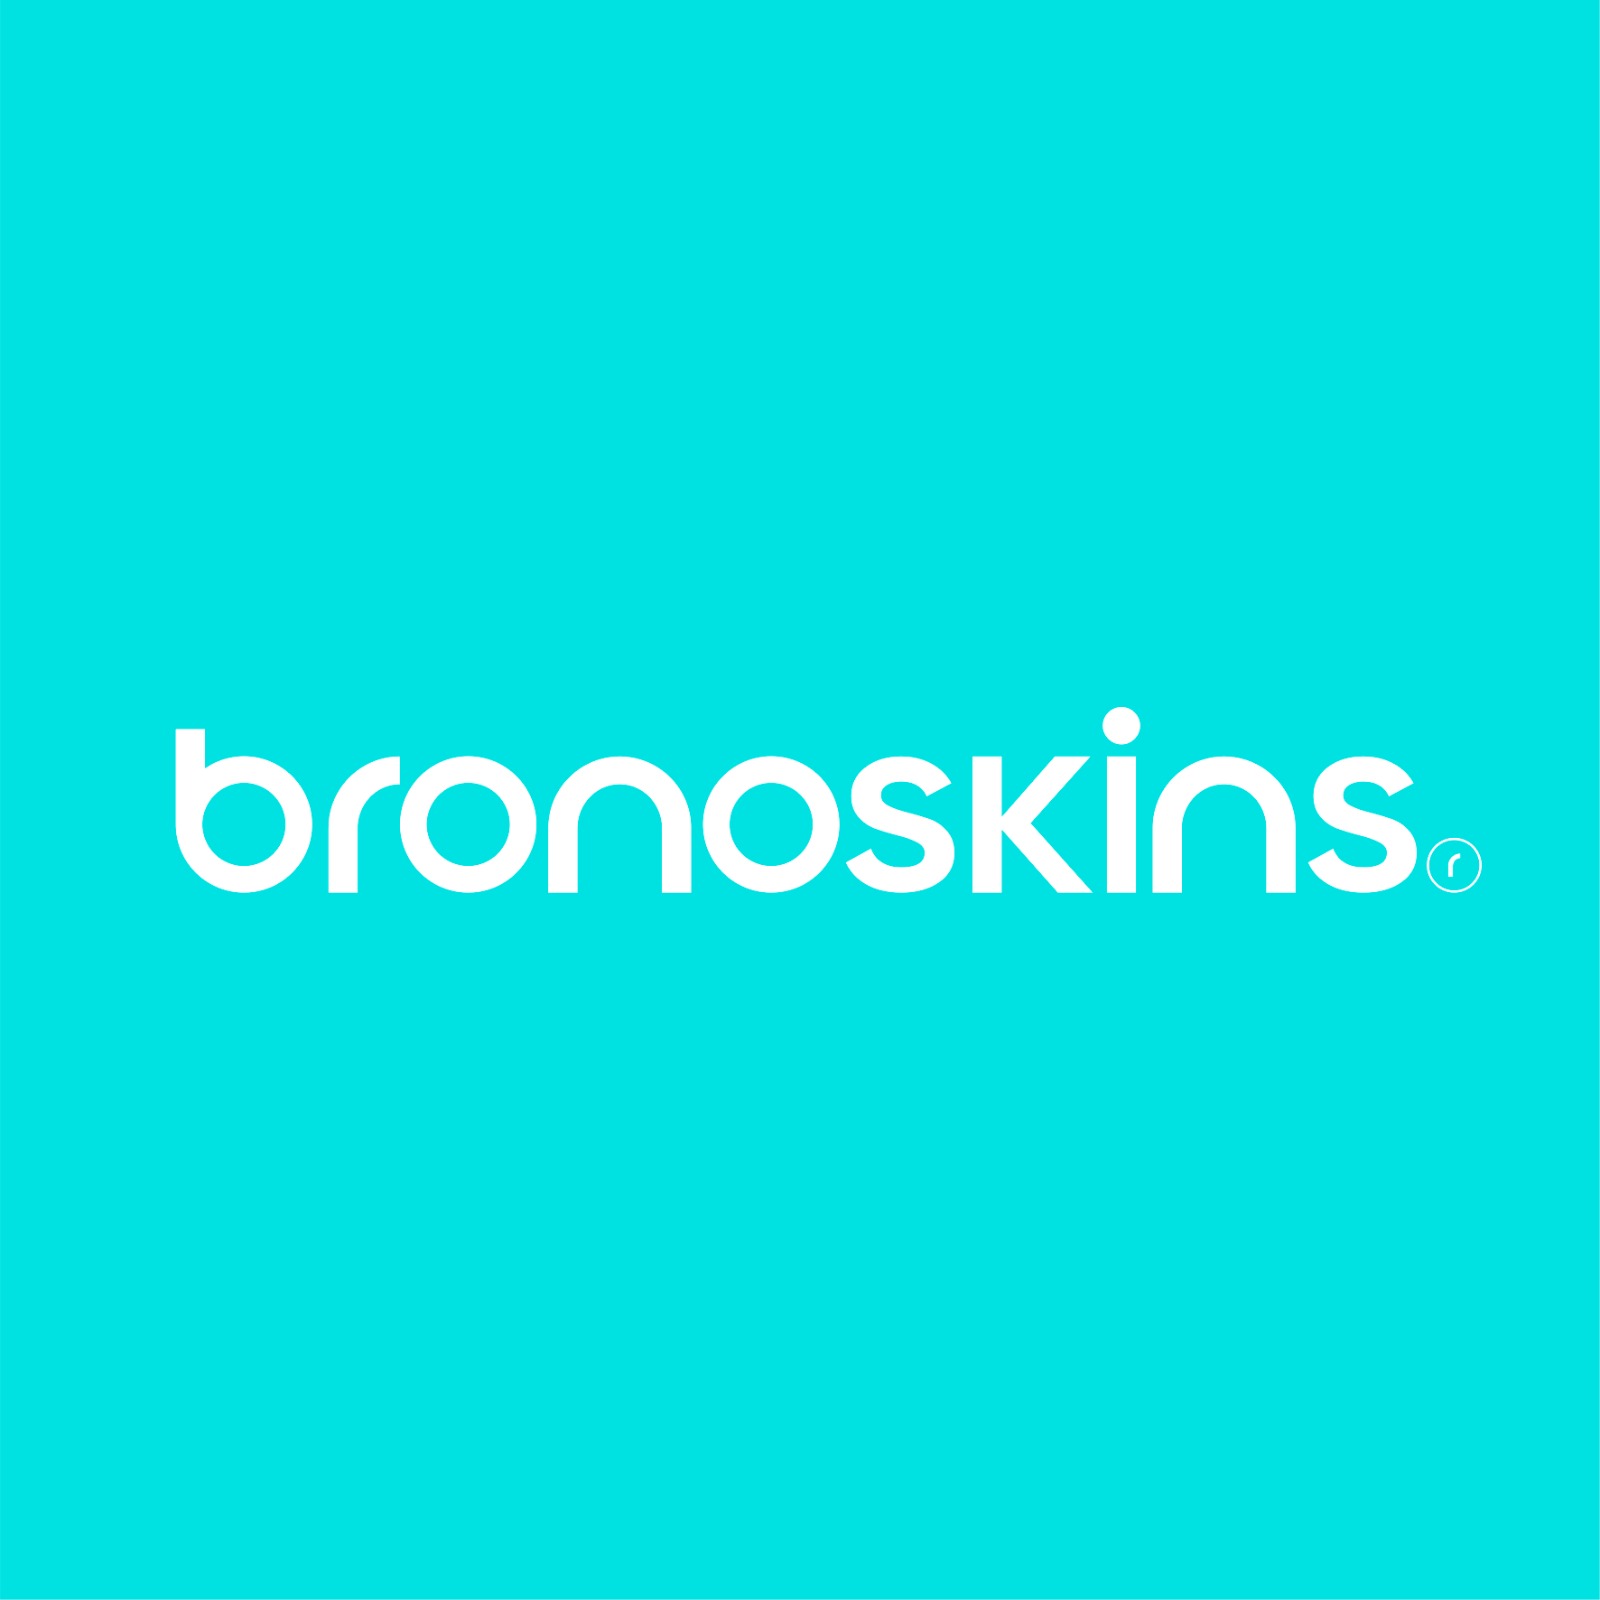 Bronoskins - Профессиональная защита для гаджетов теперь в "Высшей лиге"